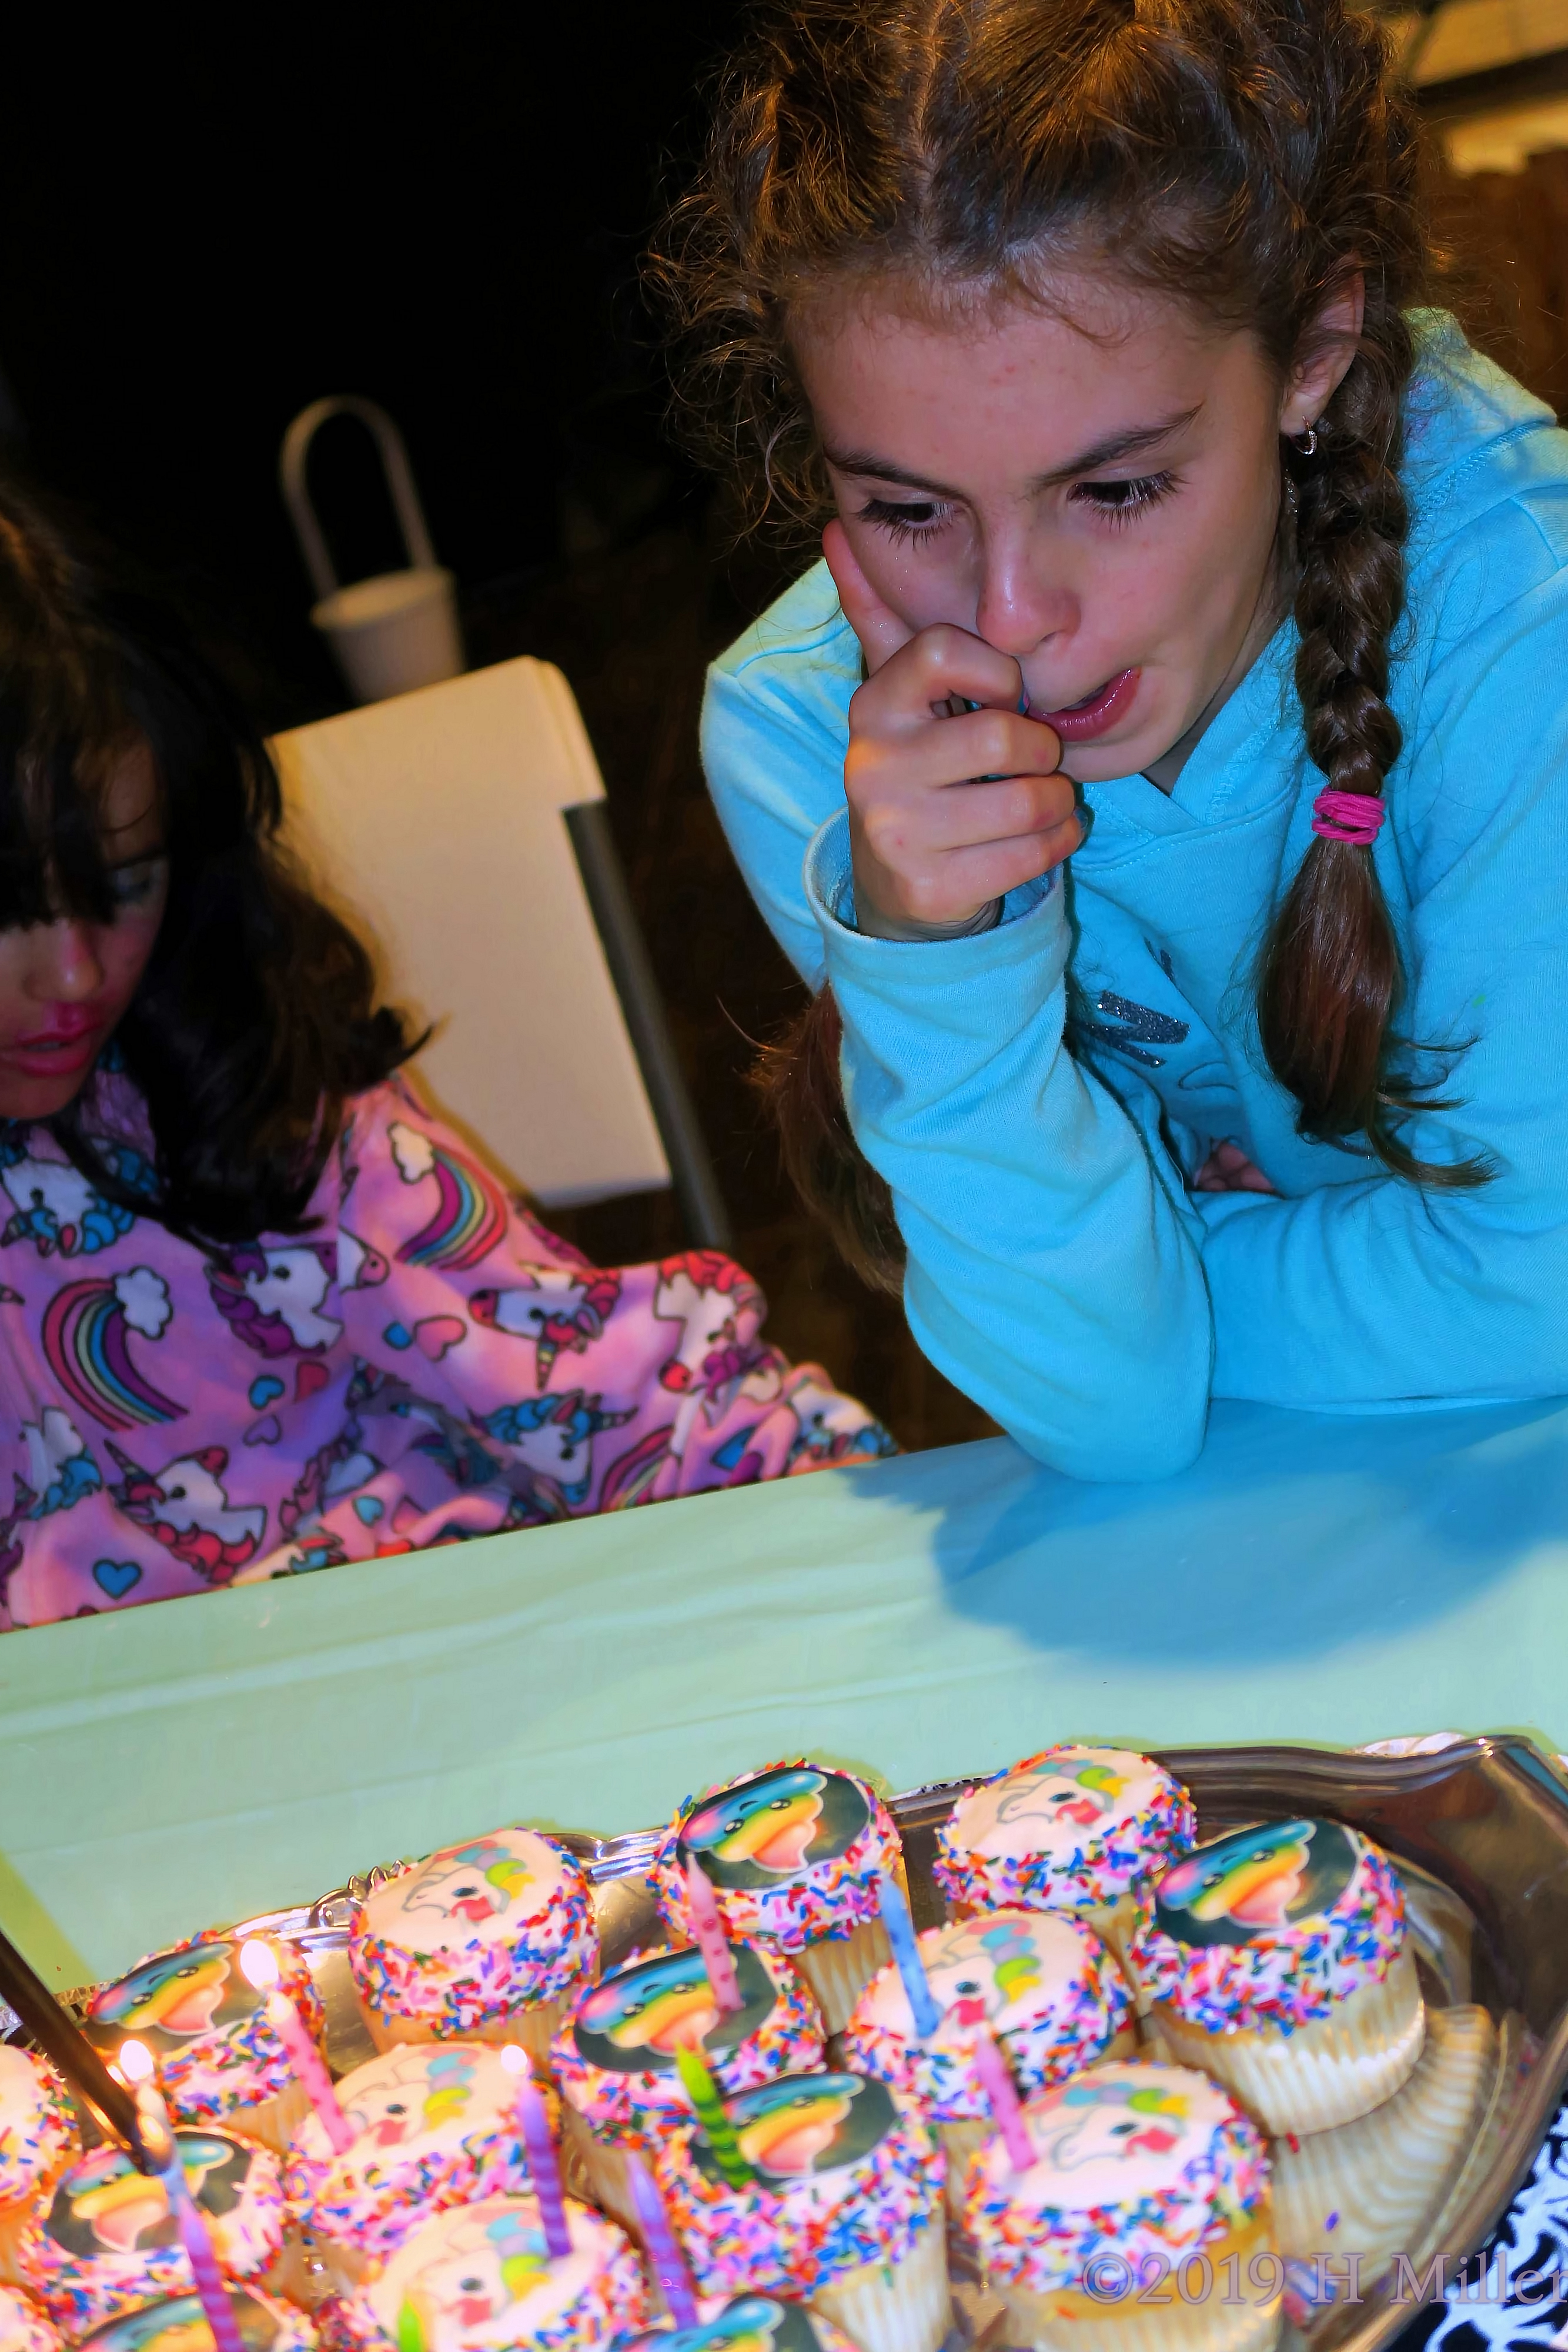 Singing And Sharing! Birthday Cupcakes At The Kids Spa! 4